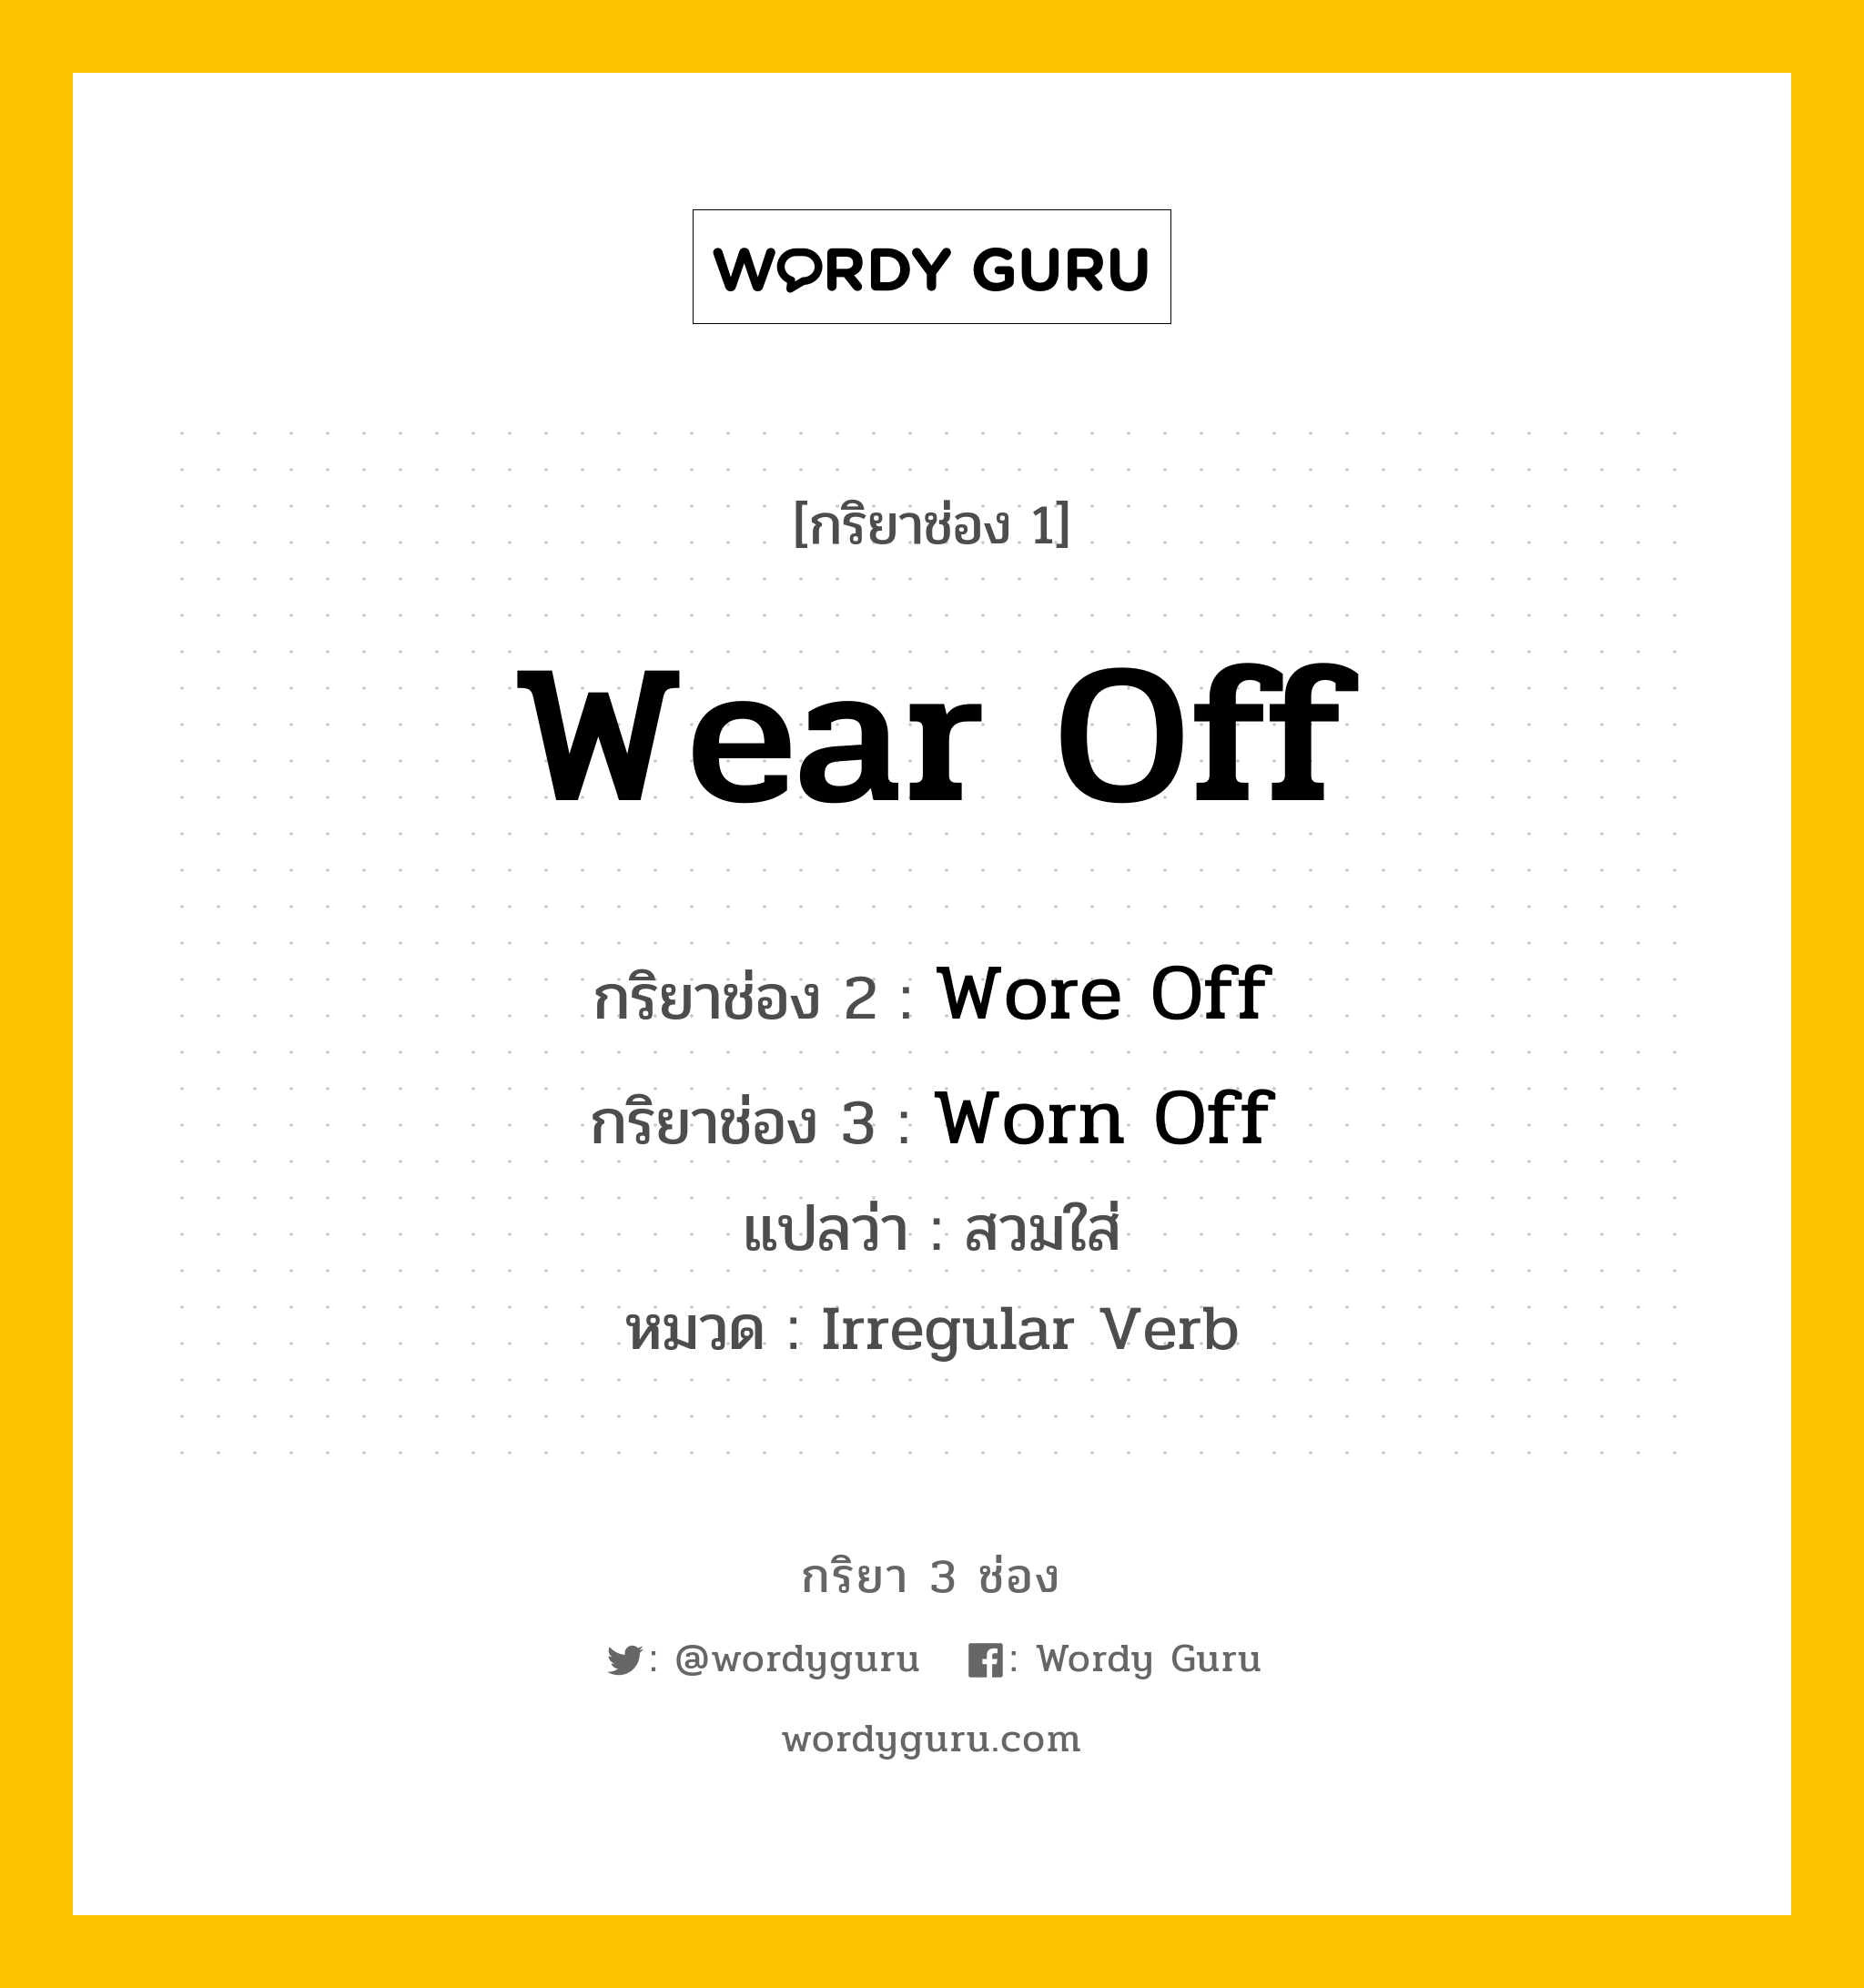 กริยา 3 ช่อง: Wear Off ช่อง 2 Wear Off ช่อง 3 คืออะไร, กริยาช่อง 1 Wear Off กริยาช่อง 2 Wore Off กริยาช่อง 3 Worn Off แปลว่า สวมใส่ หมวด Irregular Verb หมวด Irregular Verb